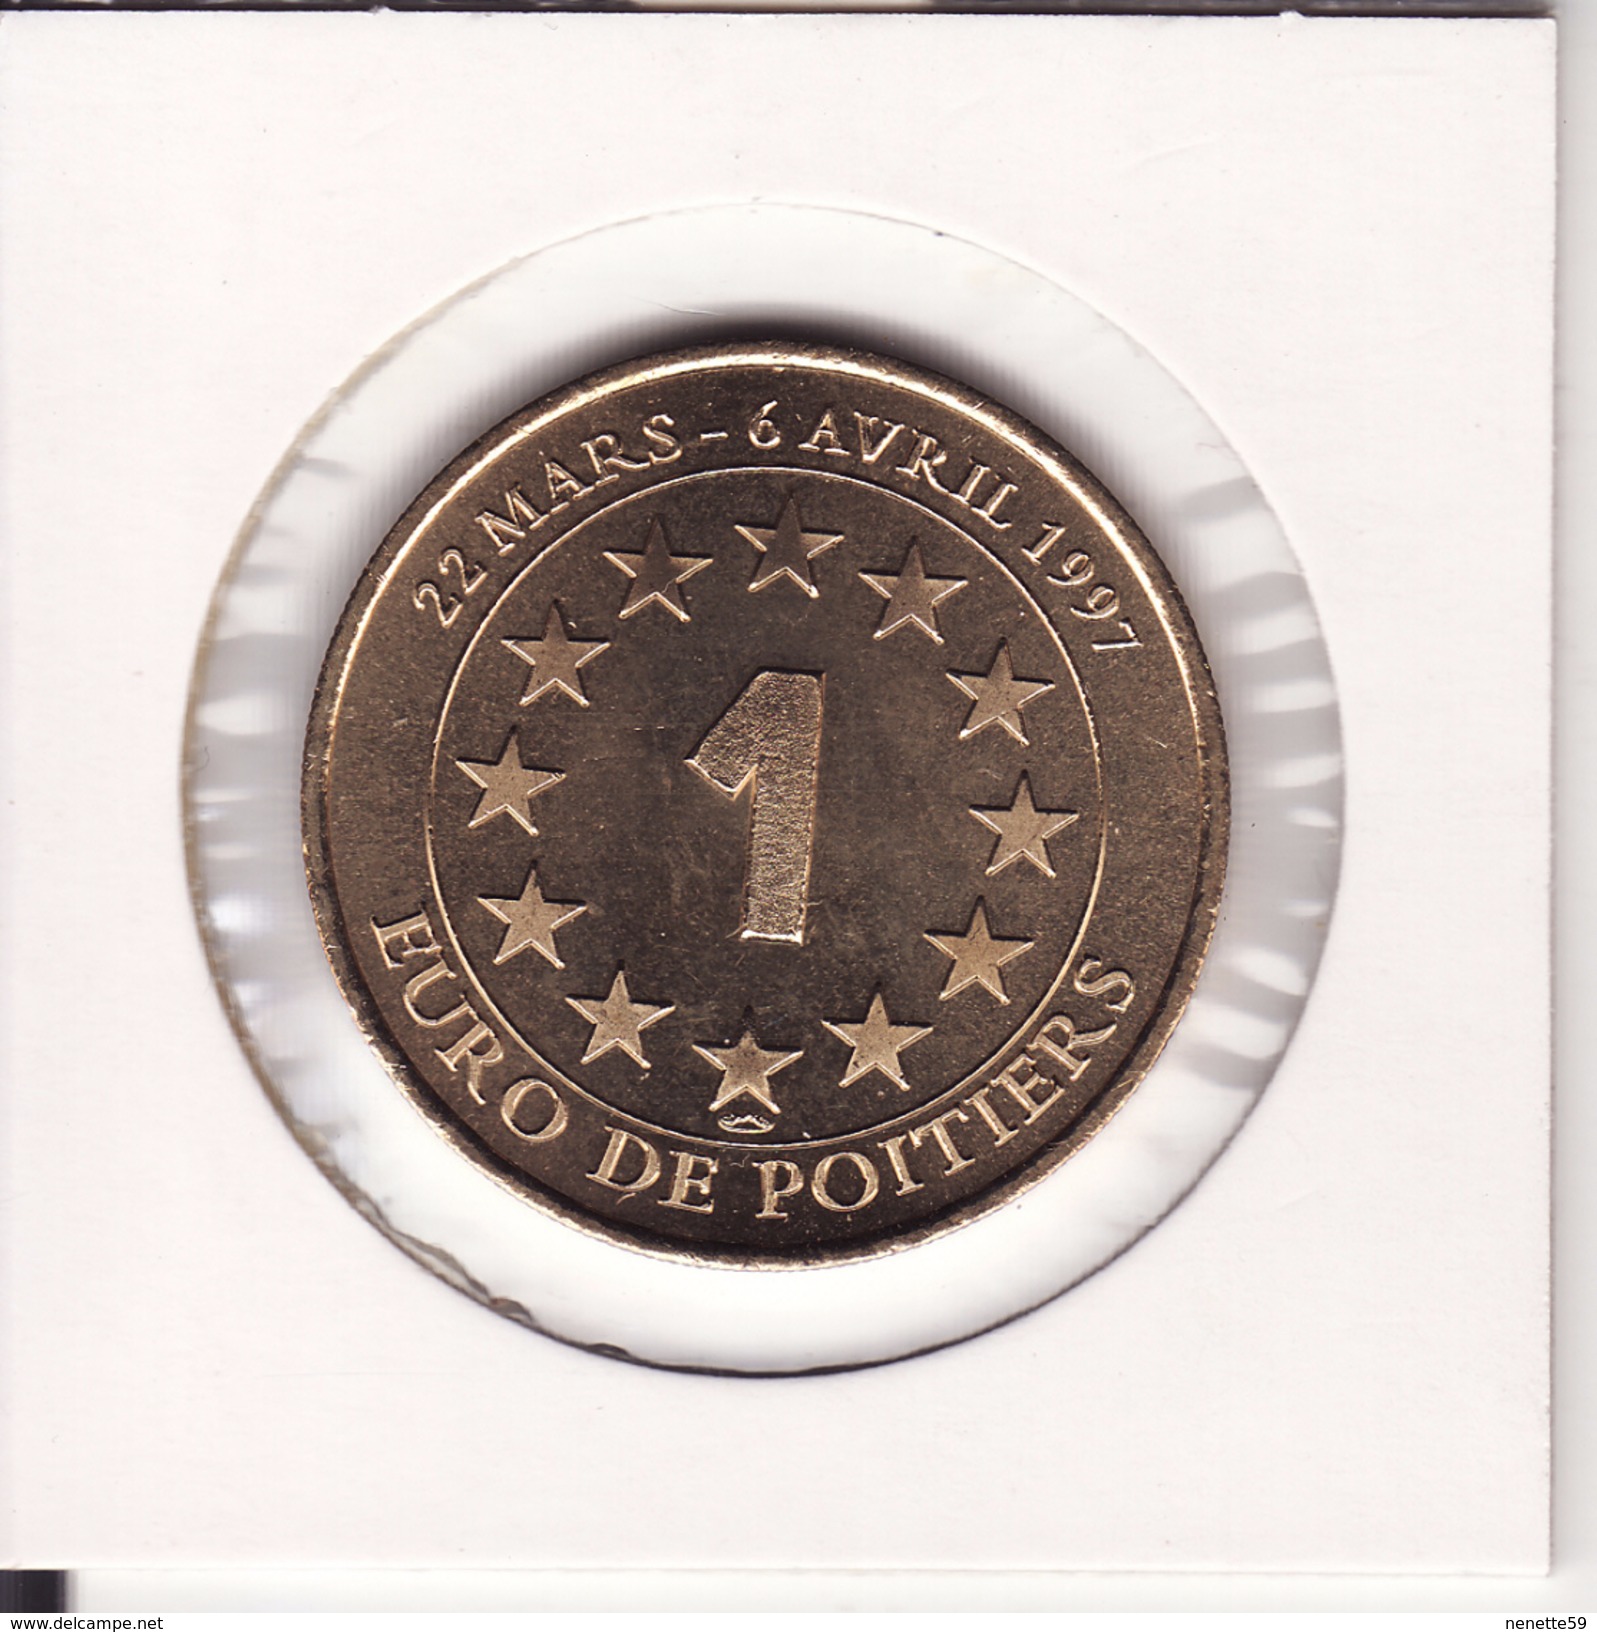 Médaille 1 Euro De POITIERS 1997 -- FUTUROSCOPE - Euros Des Villes